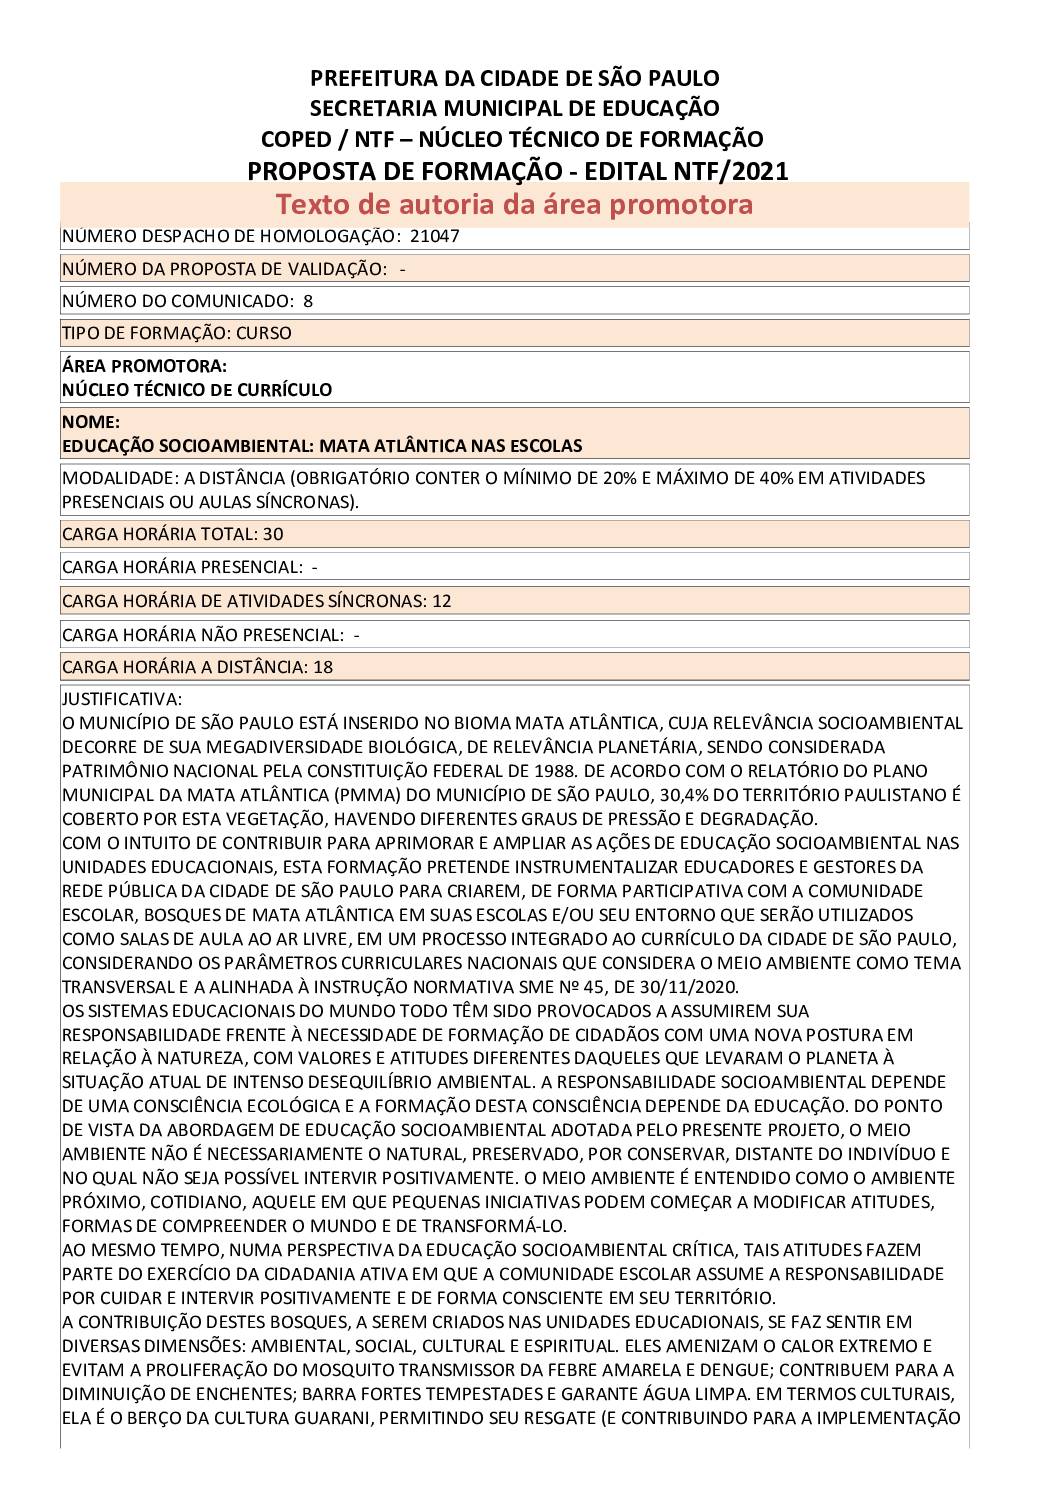 PDF com informações sobre o curso: EDUCAÇÃO SOCIOAMBIENTAL: MATA ATLÂNTICA NAS ESCOLAS